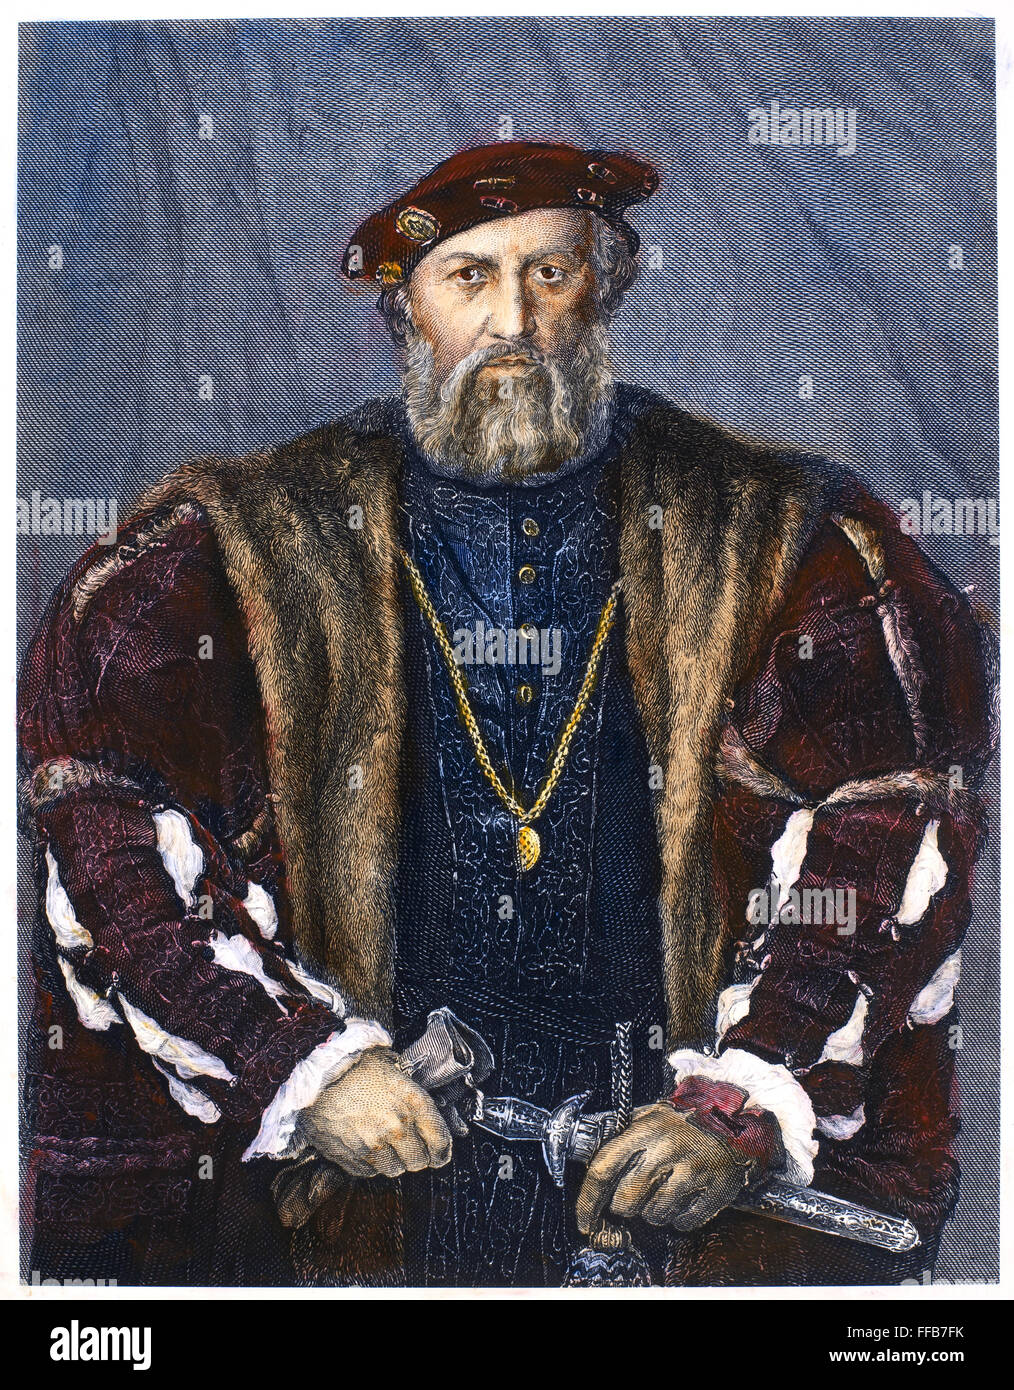 LUDOVICO SFORZA (1452-1508). /nKnown als "Il Moro," der Mohr. Herzog von Mailand, 1481-1499. Stahlstich, 19. Jahrhundert, nach Leonardo da Vinci. Stockfoto